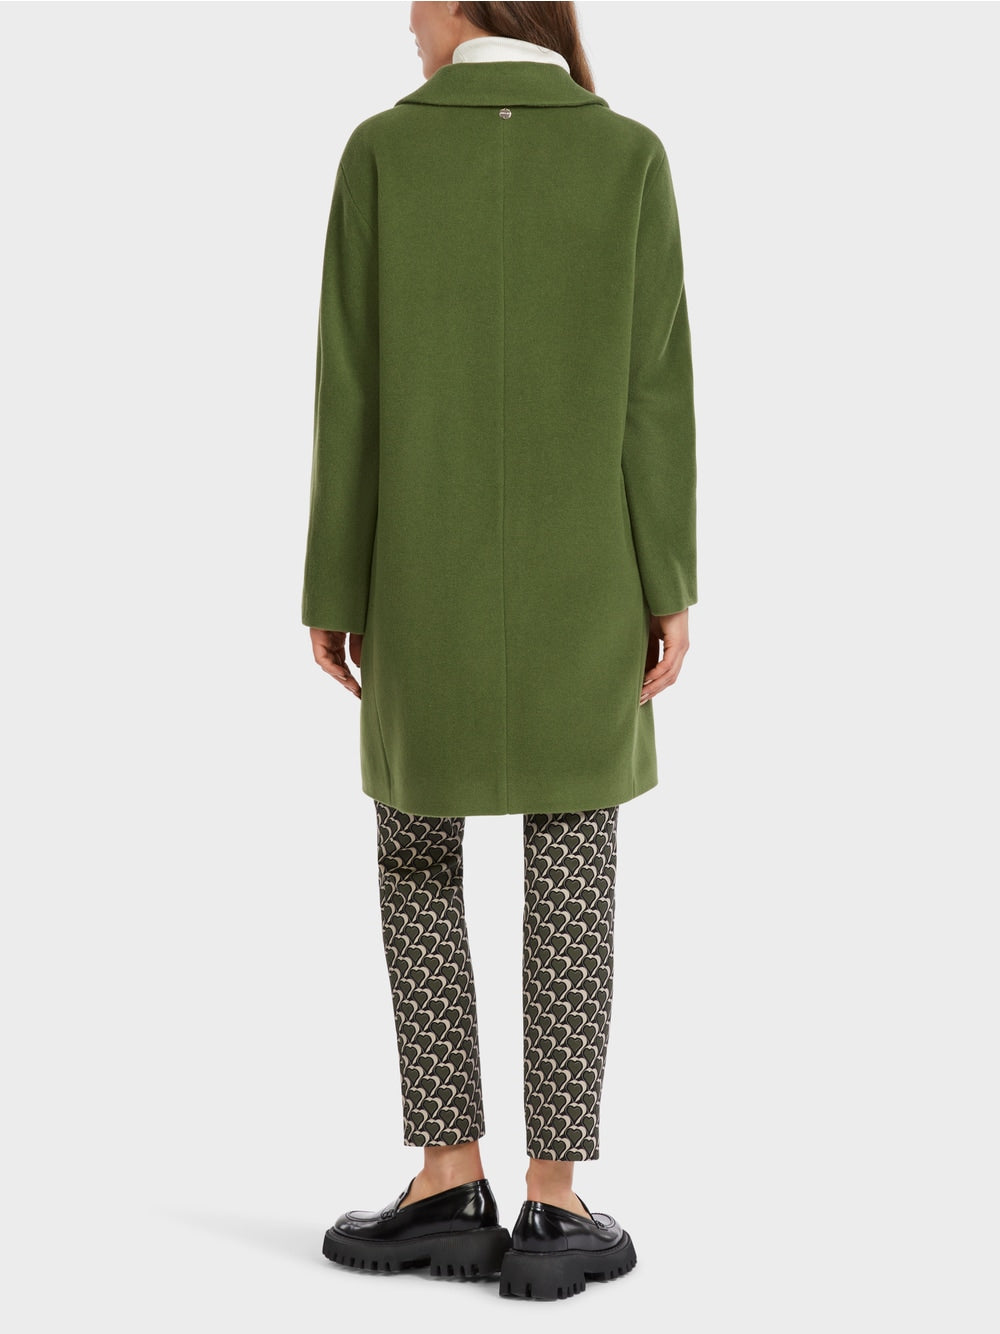 orient green alpaca/wool coat